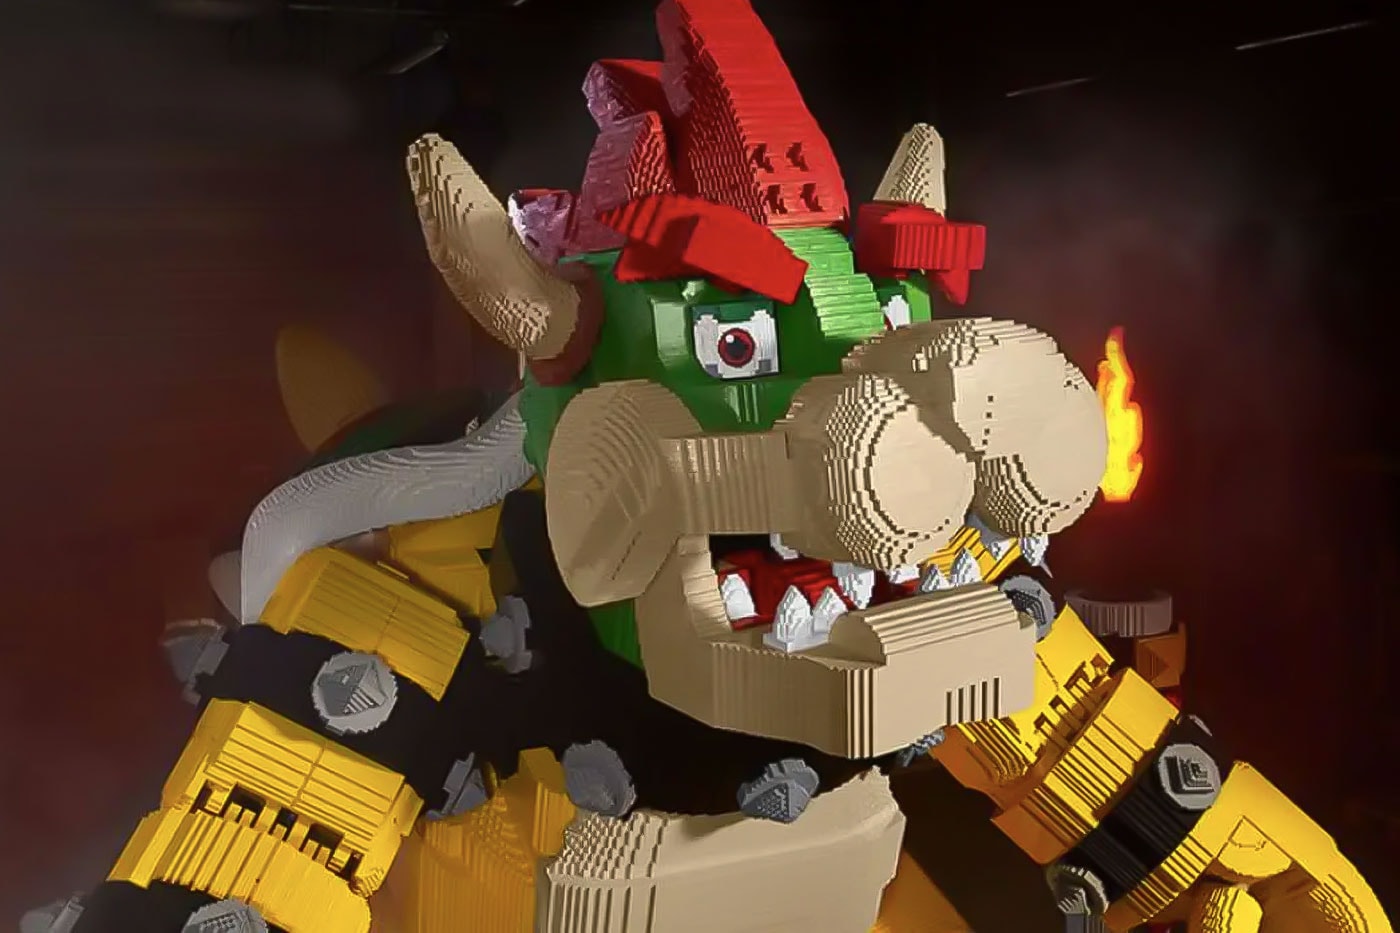 LEGO's Massive Bowser Set Gets Even Bigger